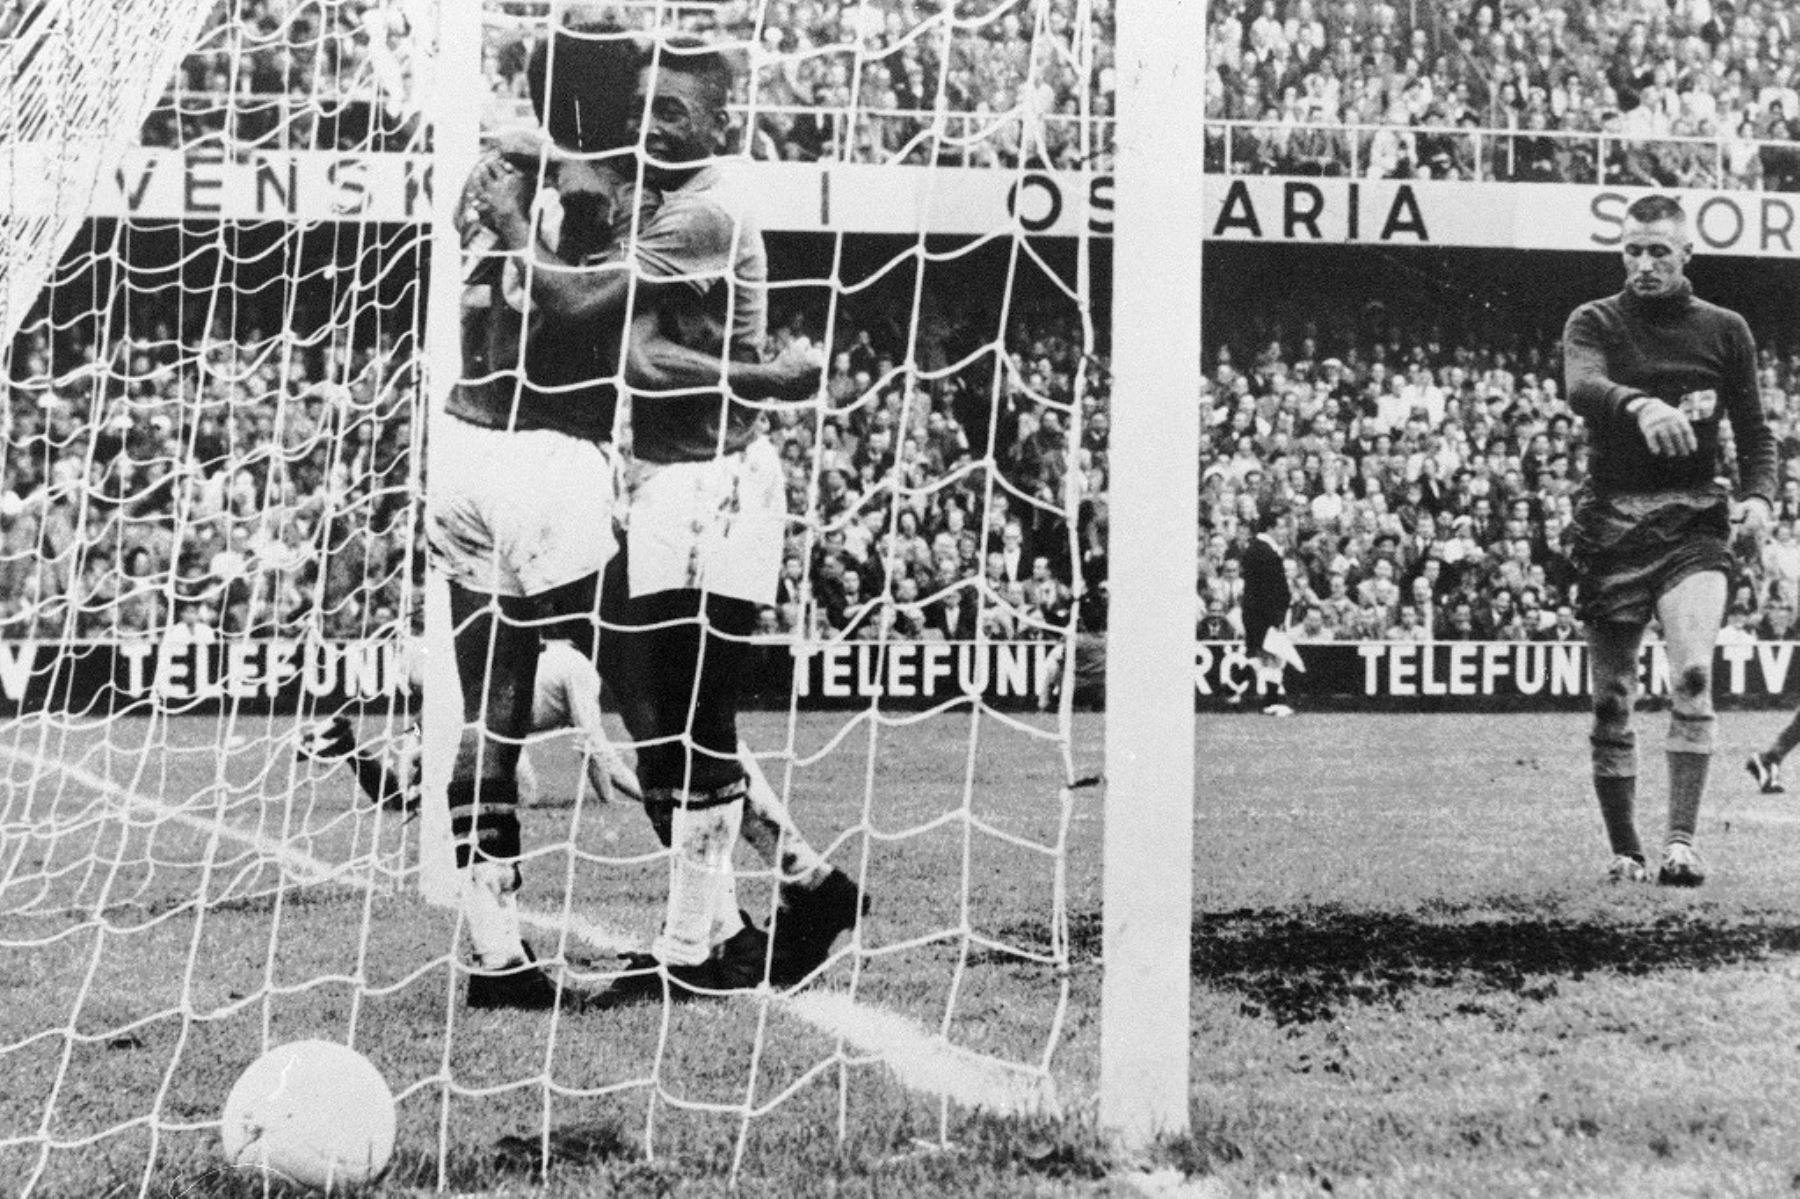 El delantero brasileño Pelé  felicita a su compañero Vava, después de que marcó un gol mientras el portero sueco Karl Svensson reacciona el 28 de junio de 1958 en Estocolmo durante la final de la Copa del Mundo entre Brasil y Suecia.  Foto:AFP